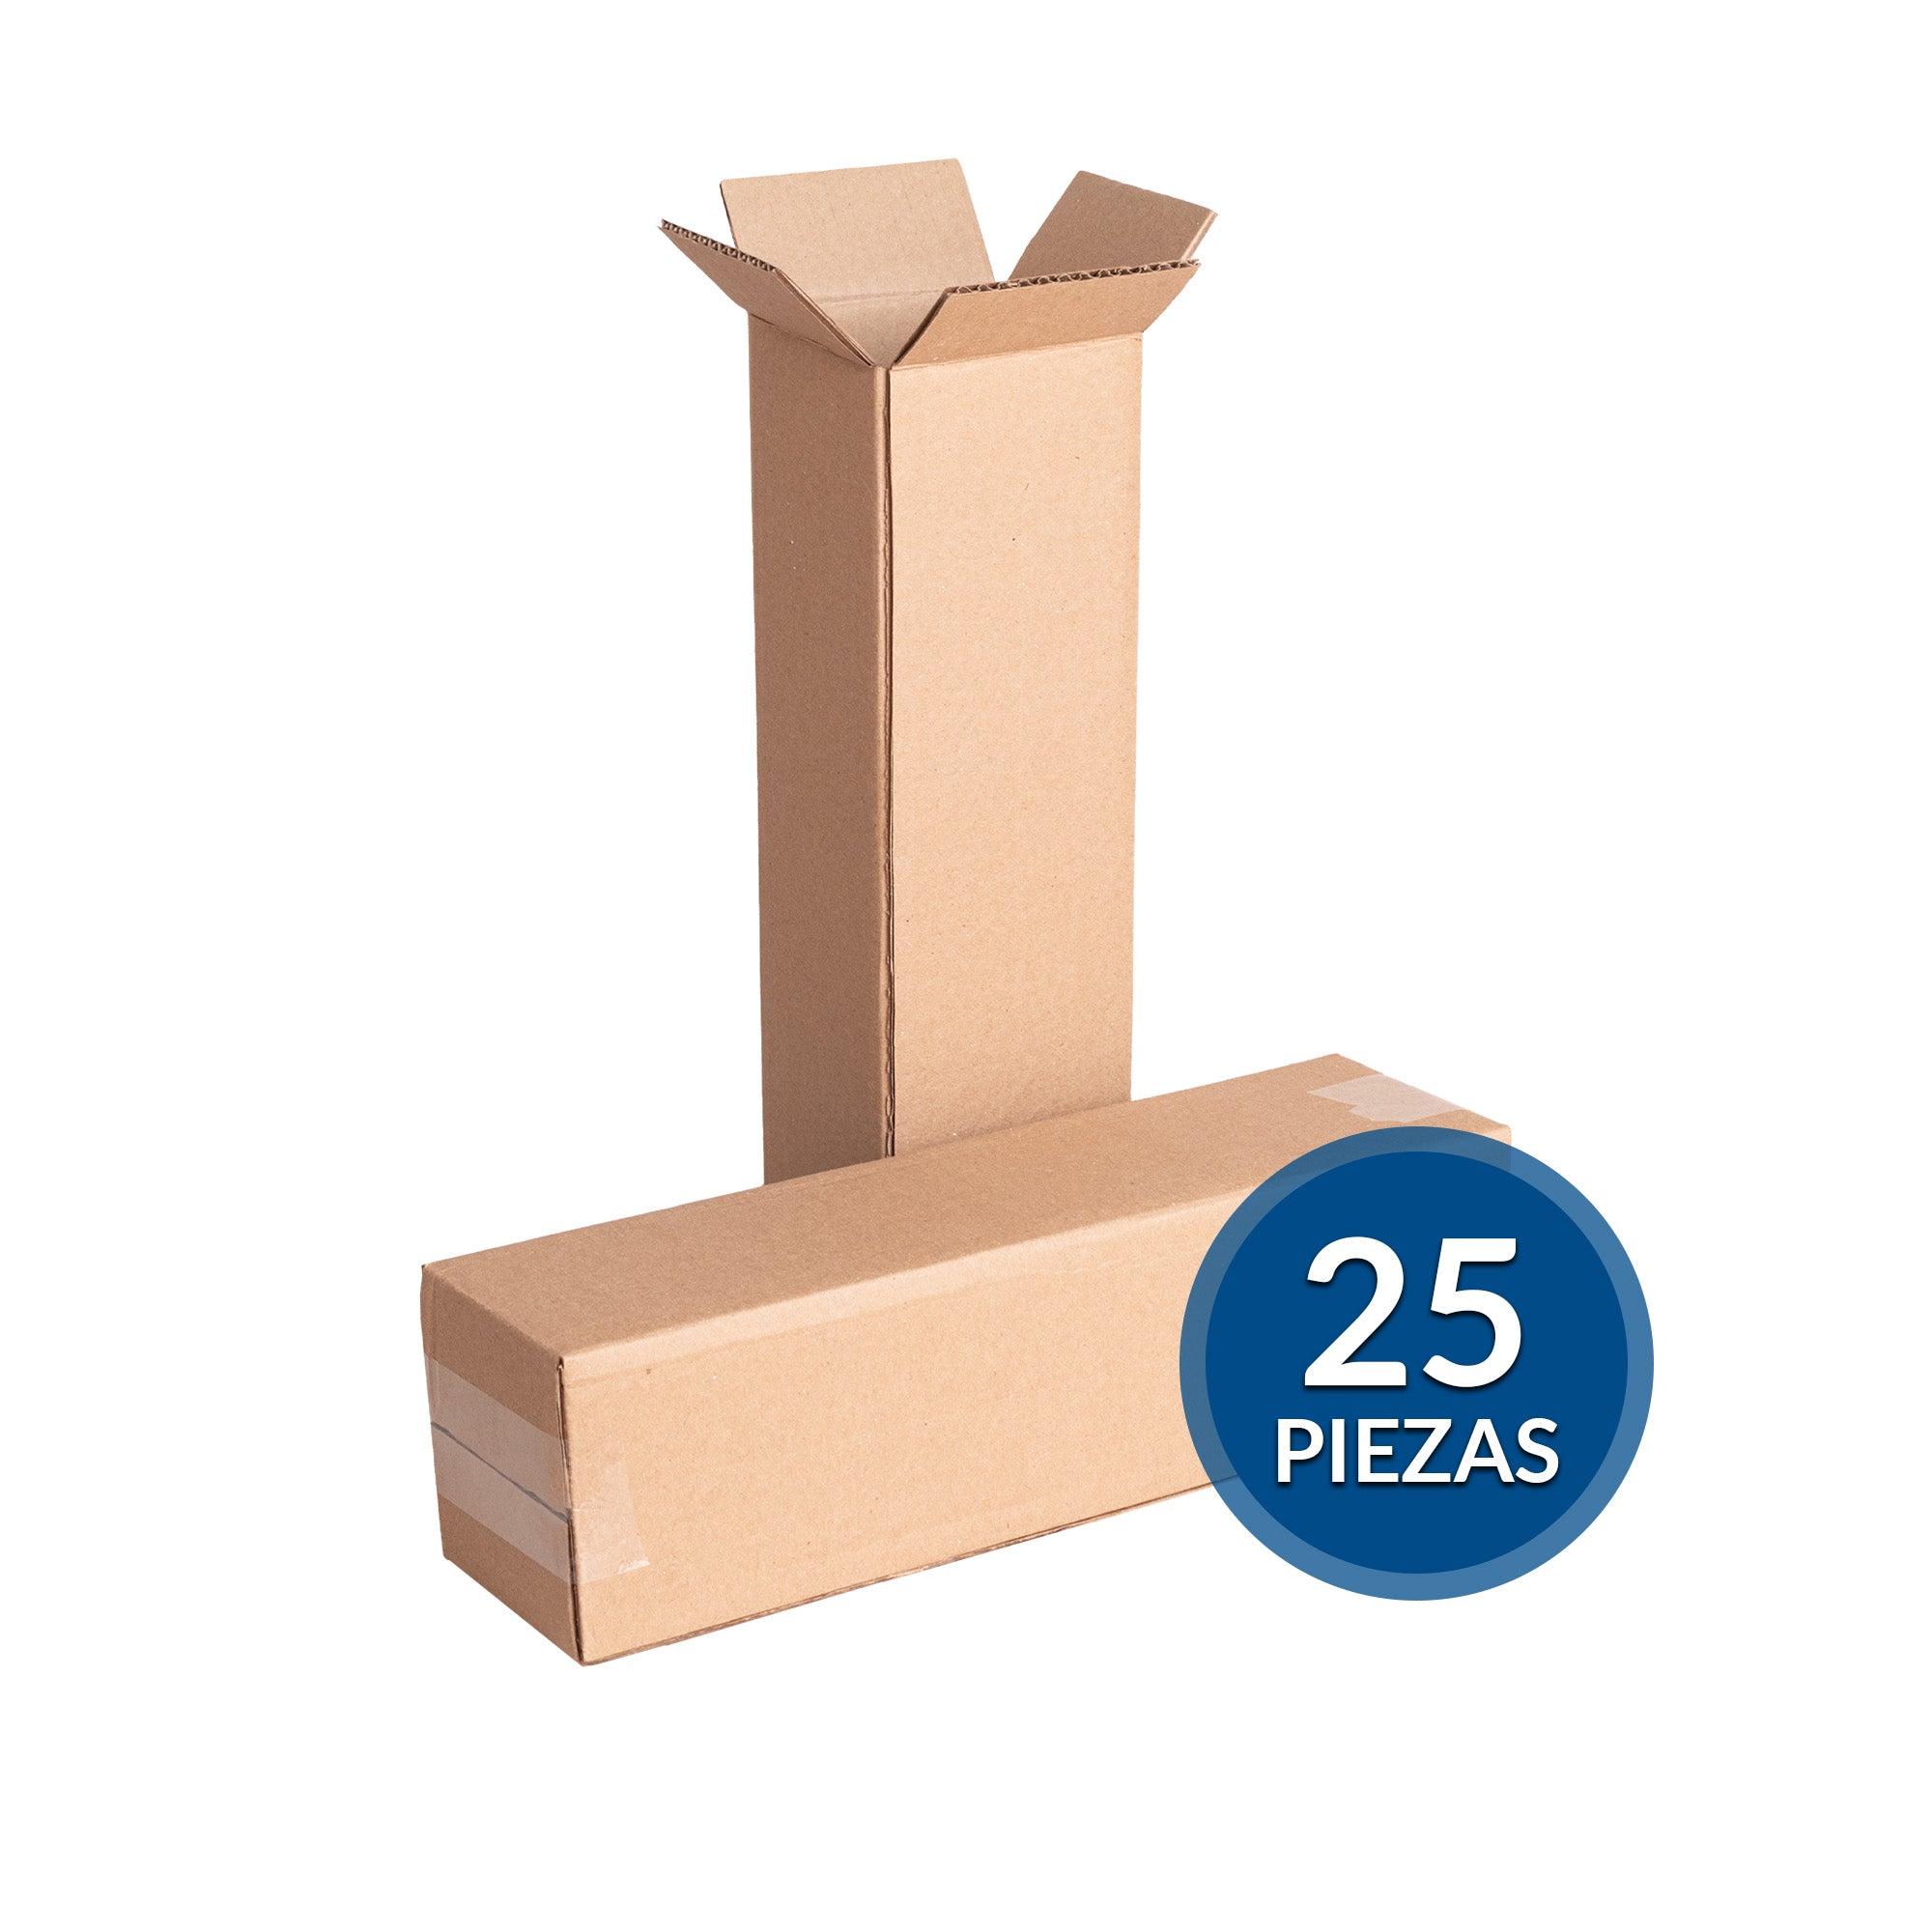 Cajas de cartón para envíos #23 – Packsys